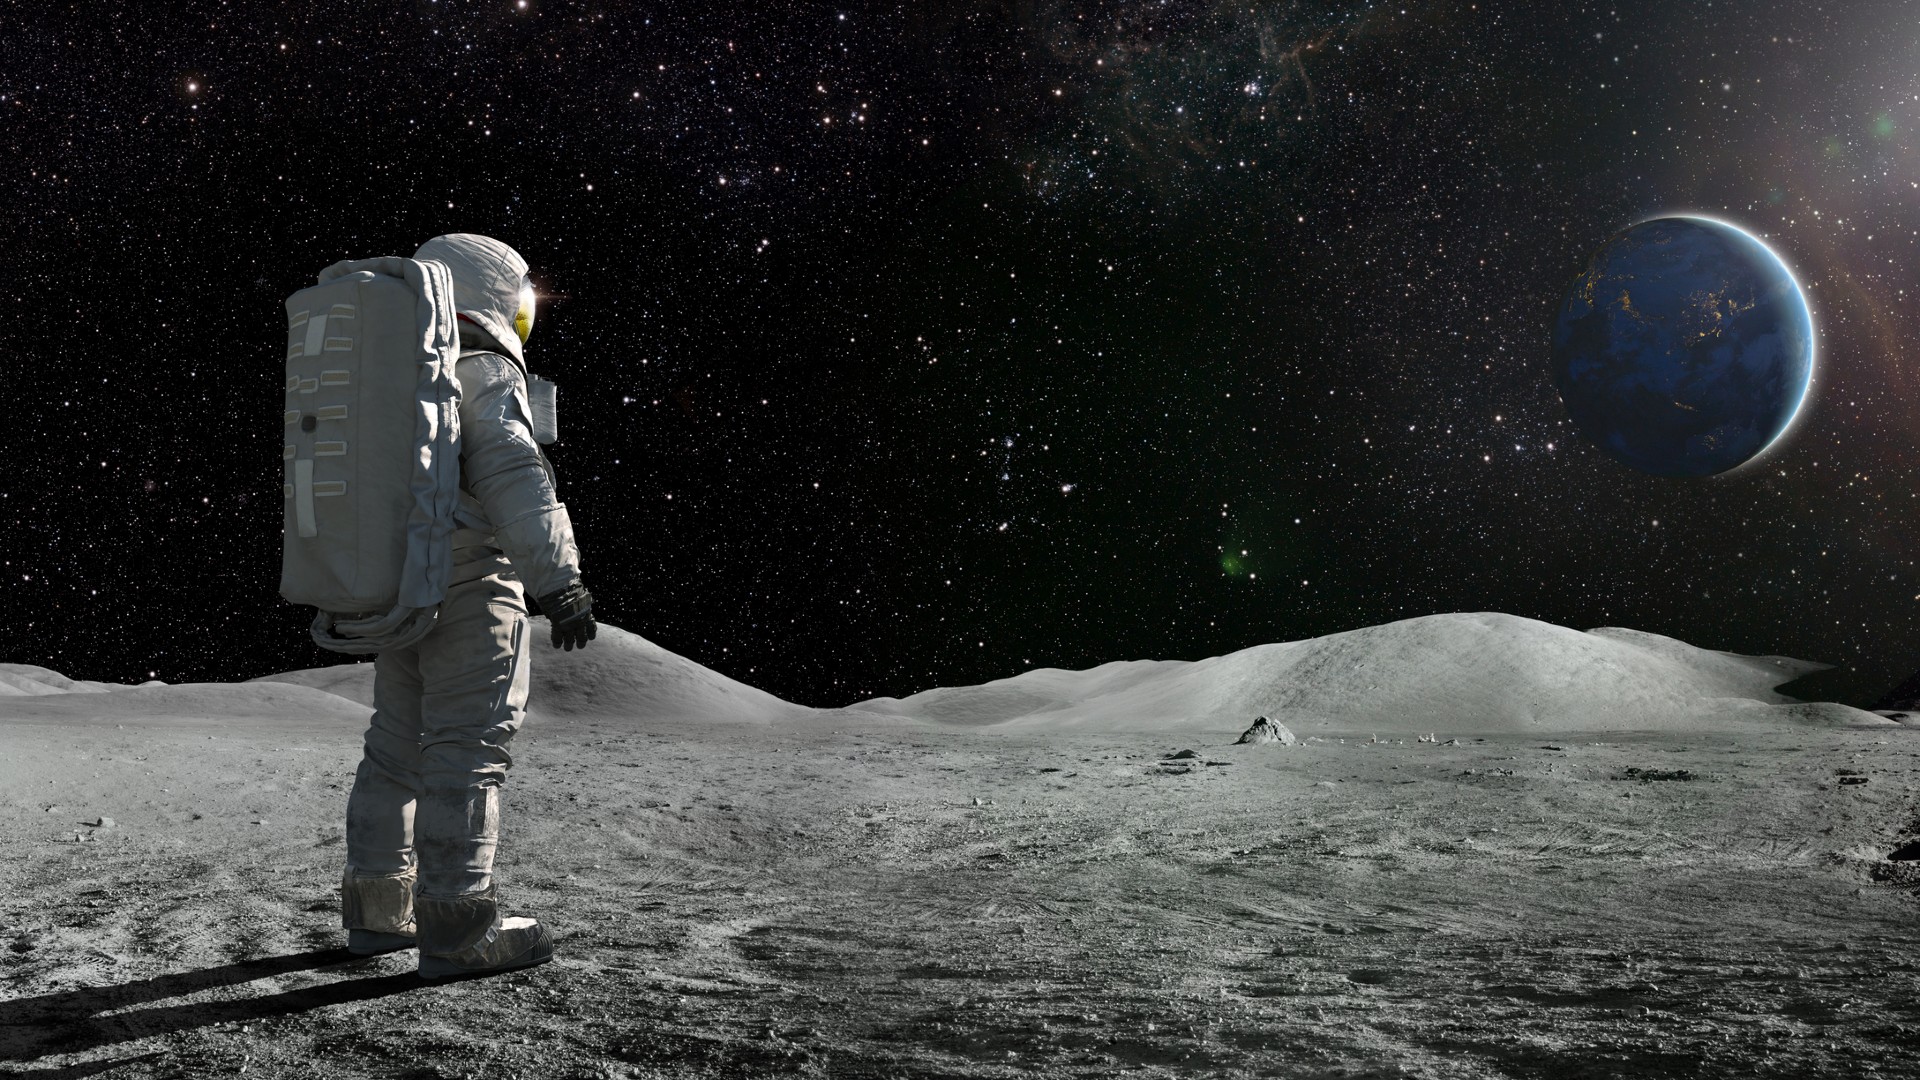 Artemis-uppdragets astronauter ska plantera växter på månen 2026